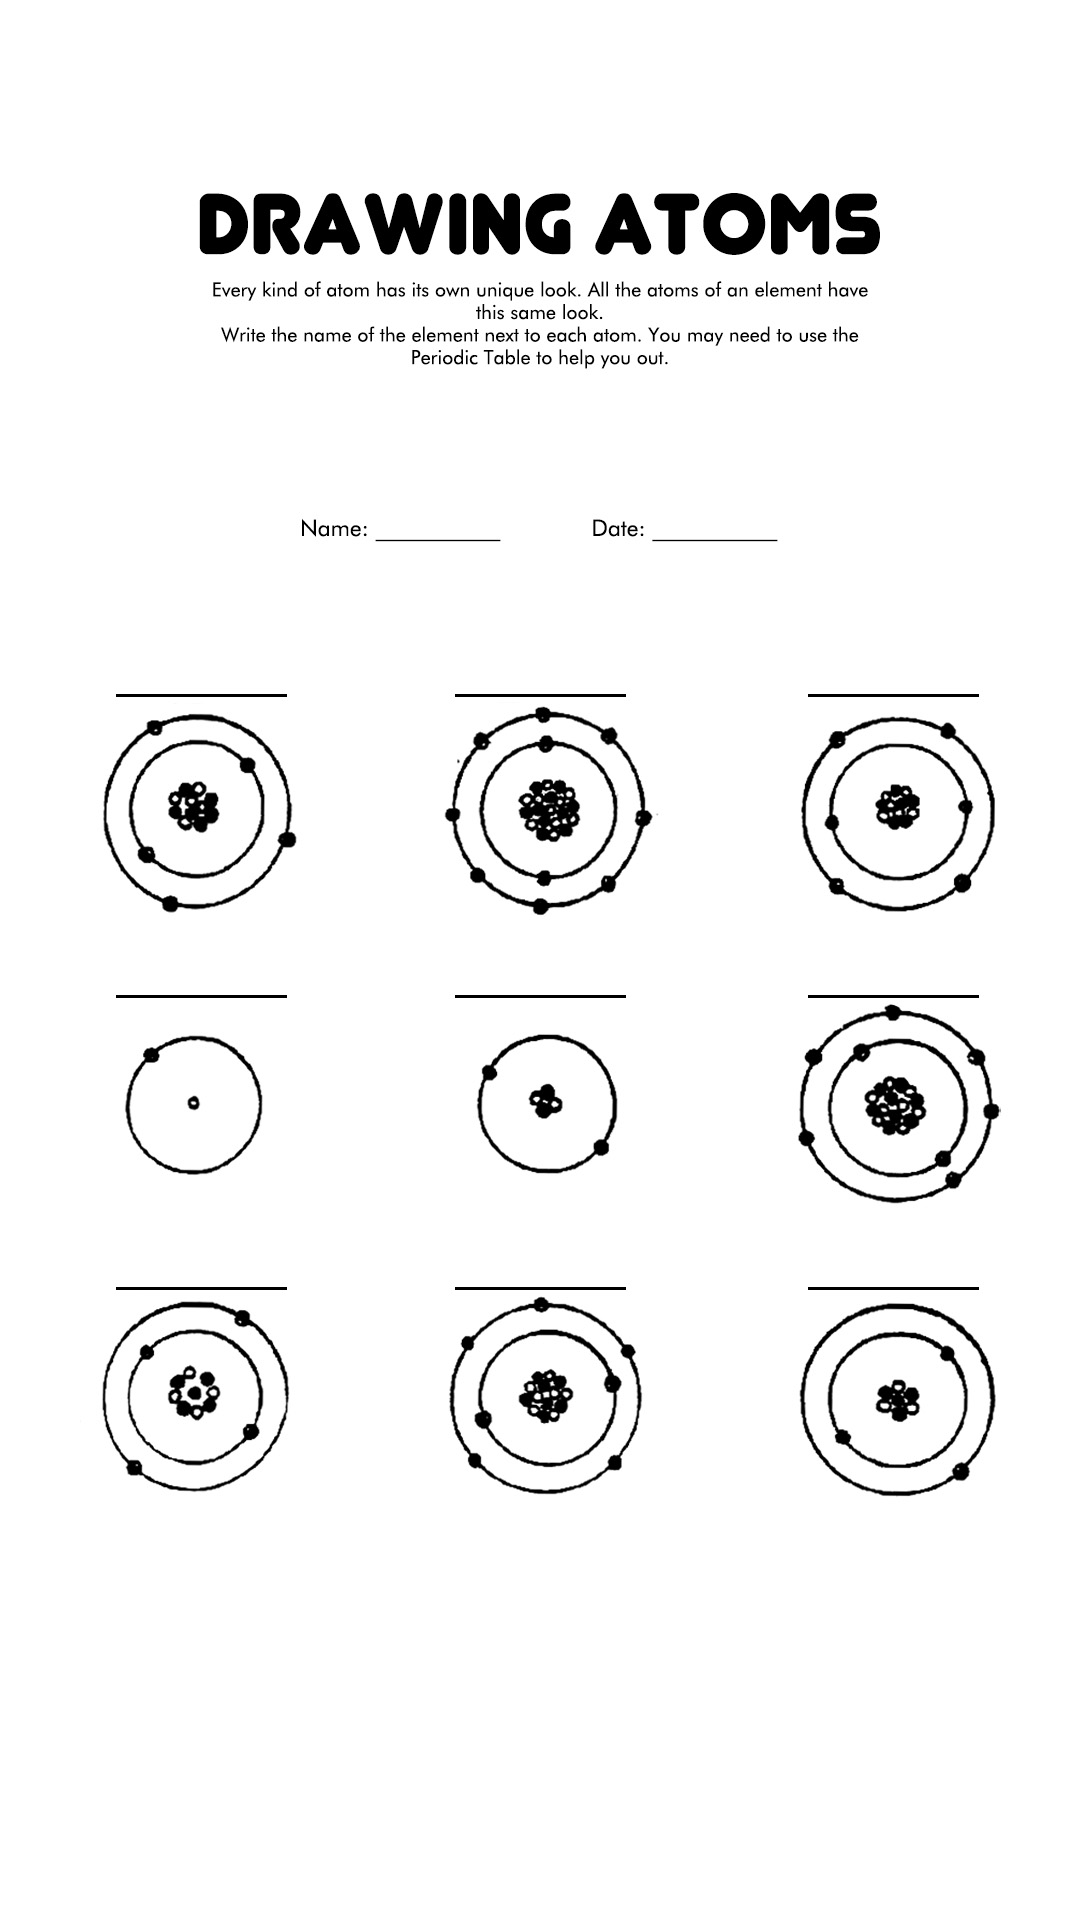 Drawing Atoms Worksheet Image